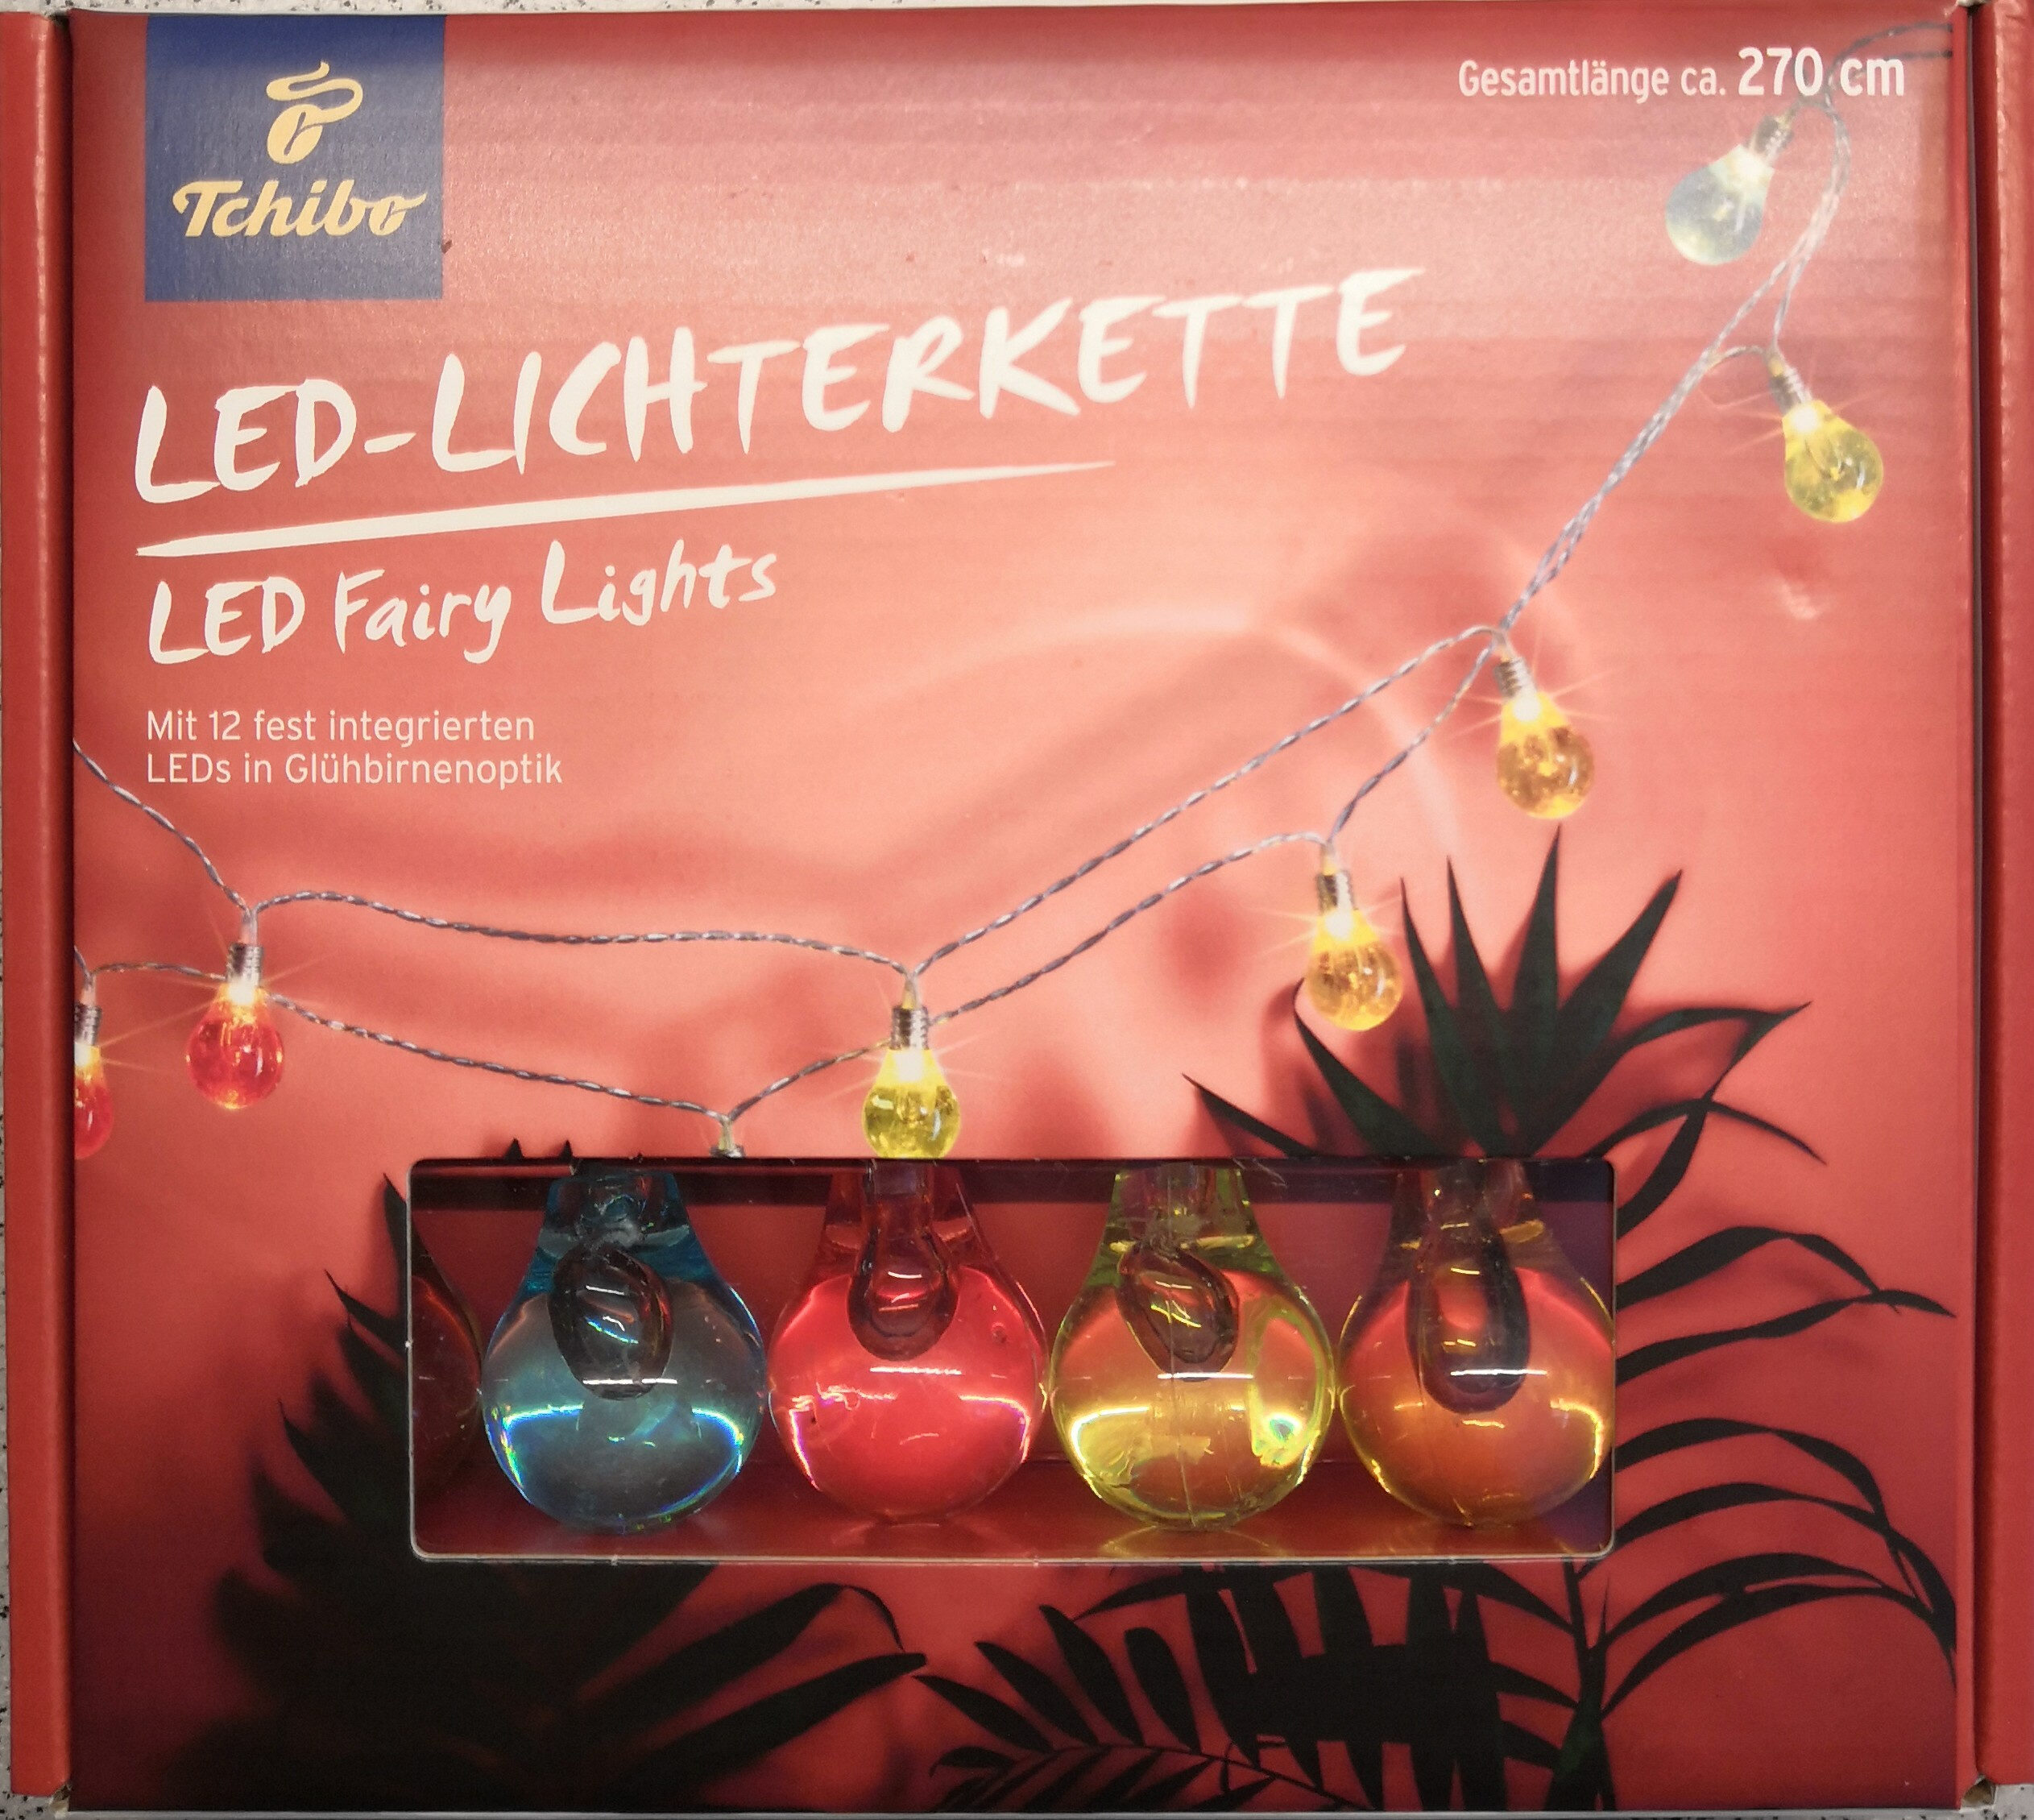 LED-Lichterkette - Product - de